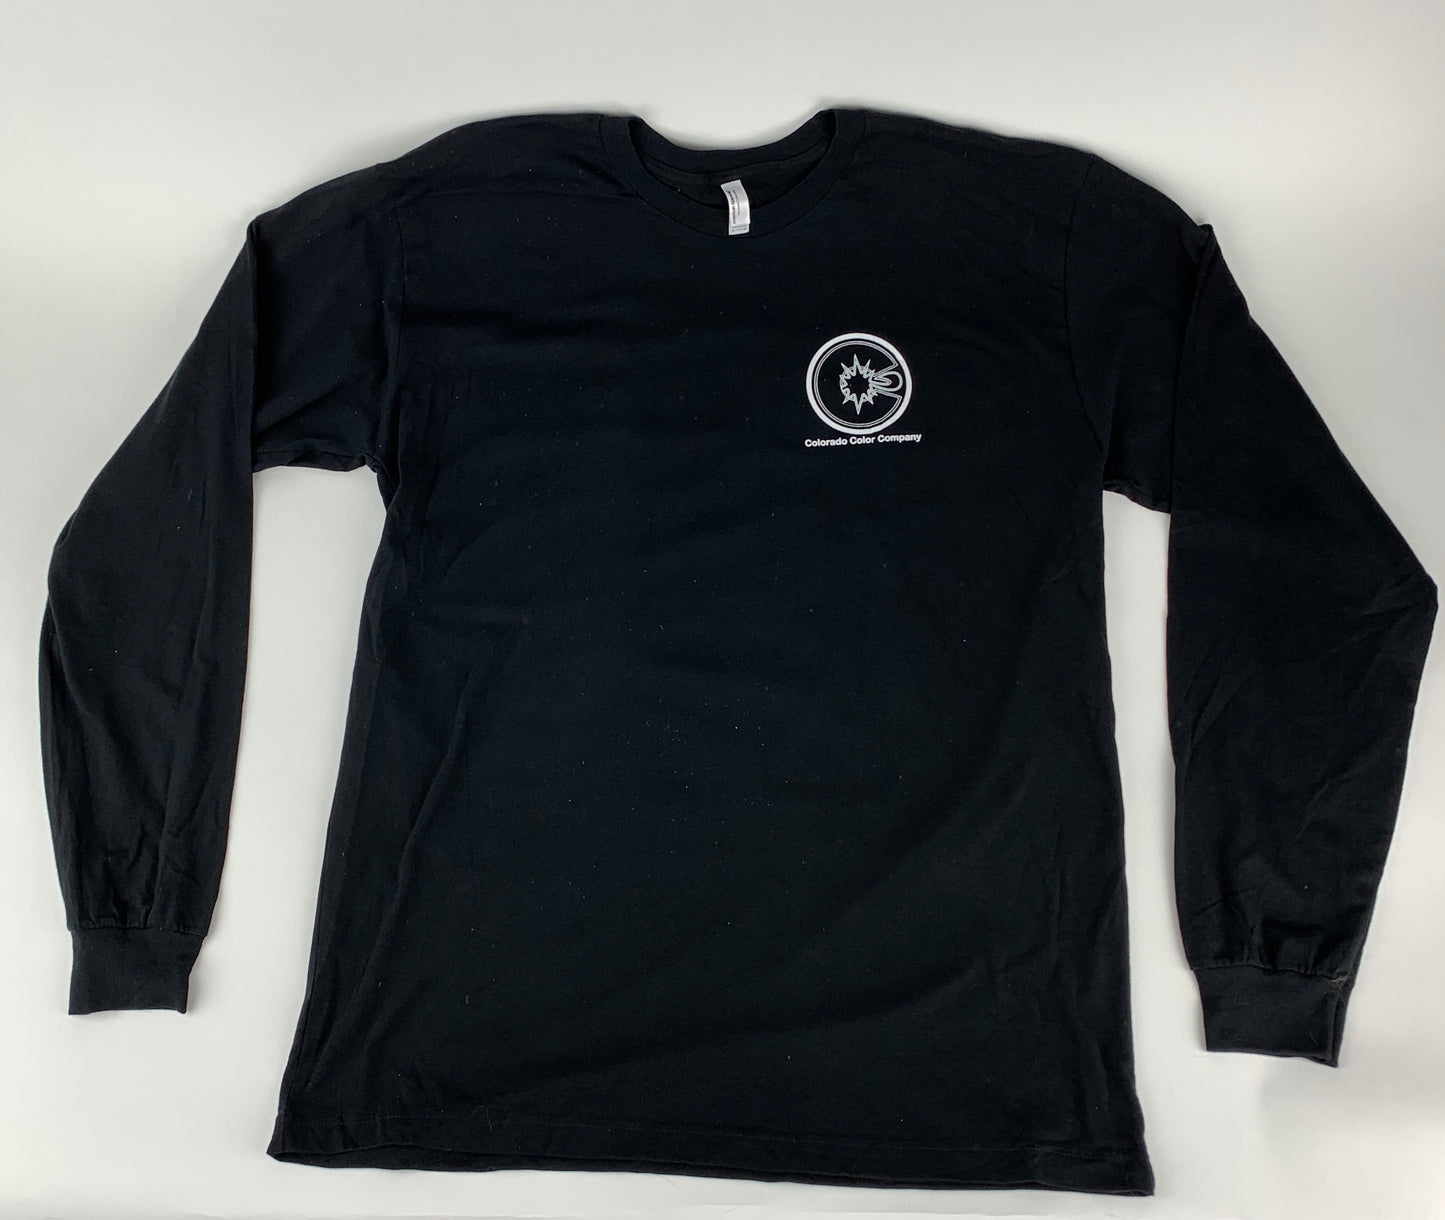 Schwarzes Langarm-T-Shirt der Colorado Color Company – American Apparel